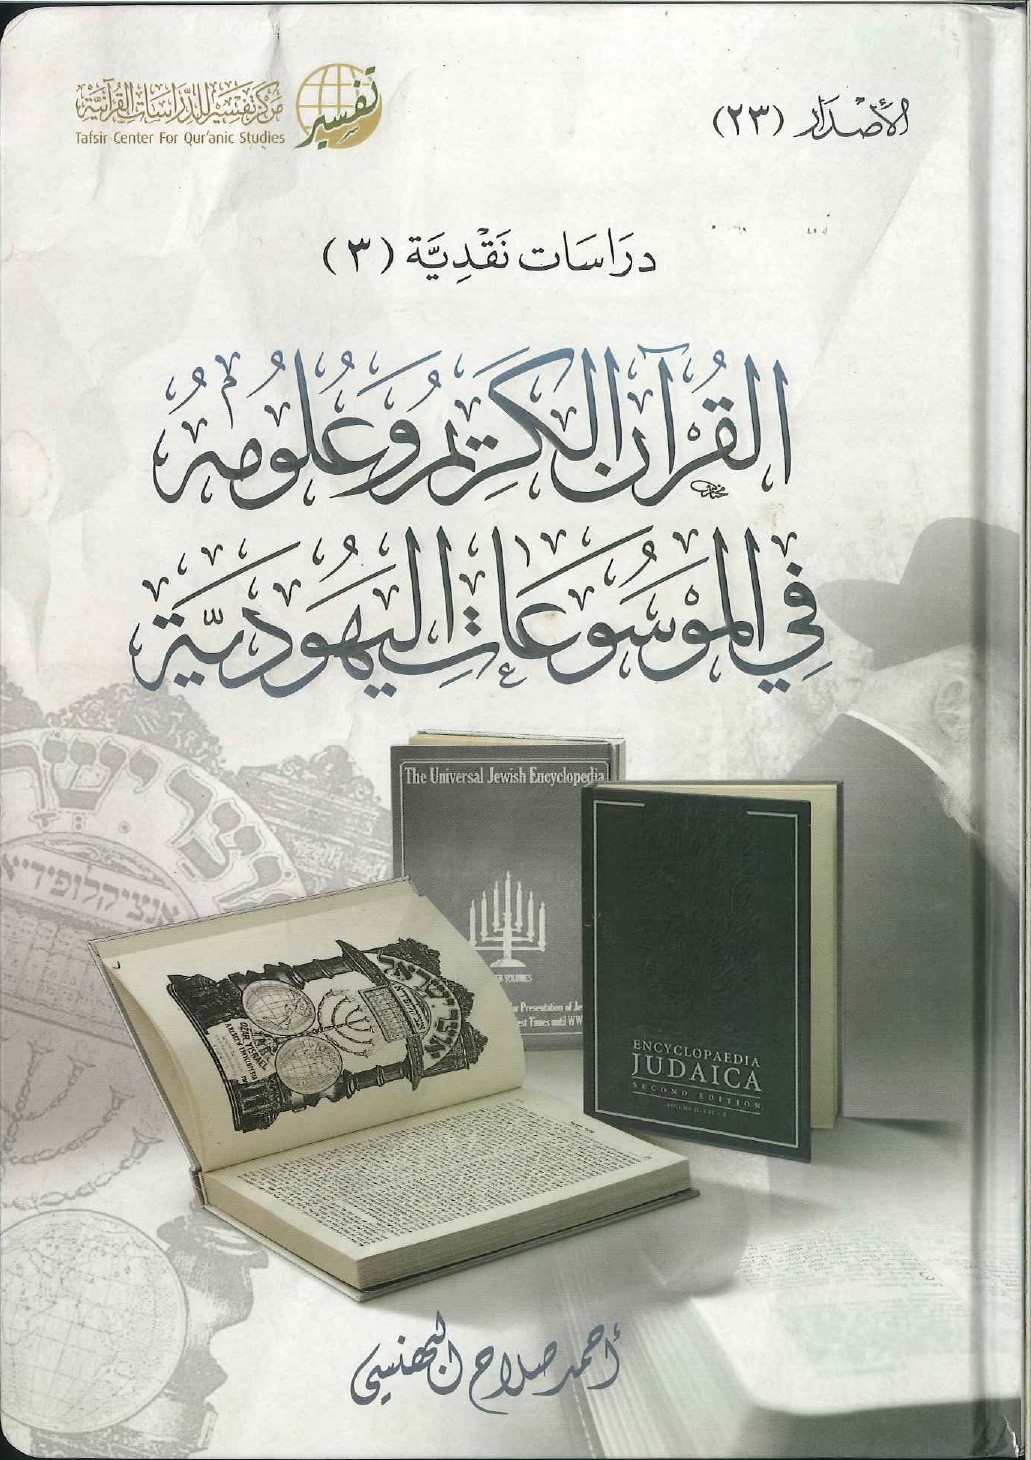 القرآن الكريم وعلومه في الموسوعات اليهودية